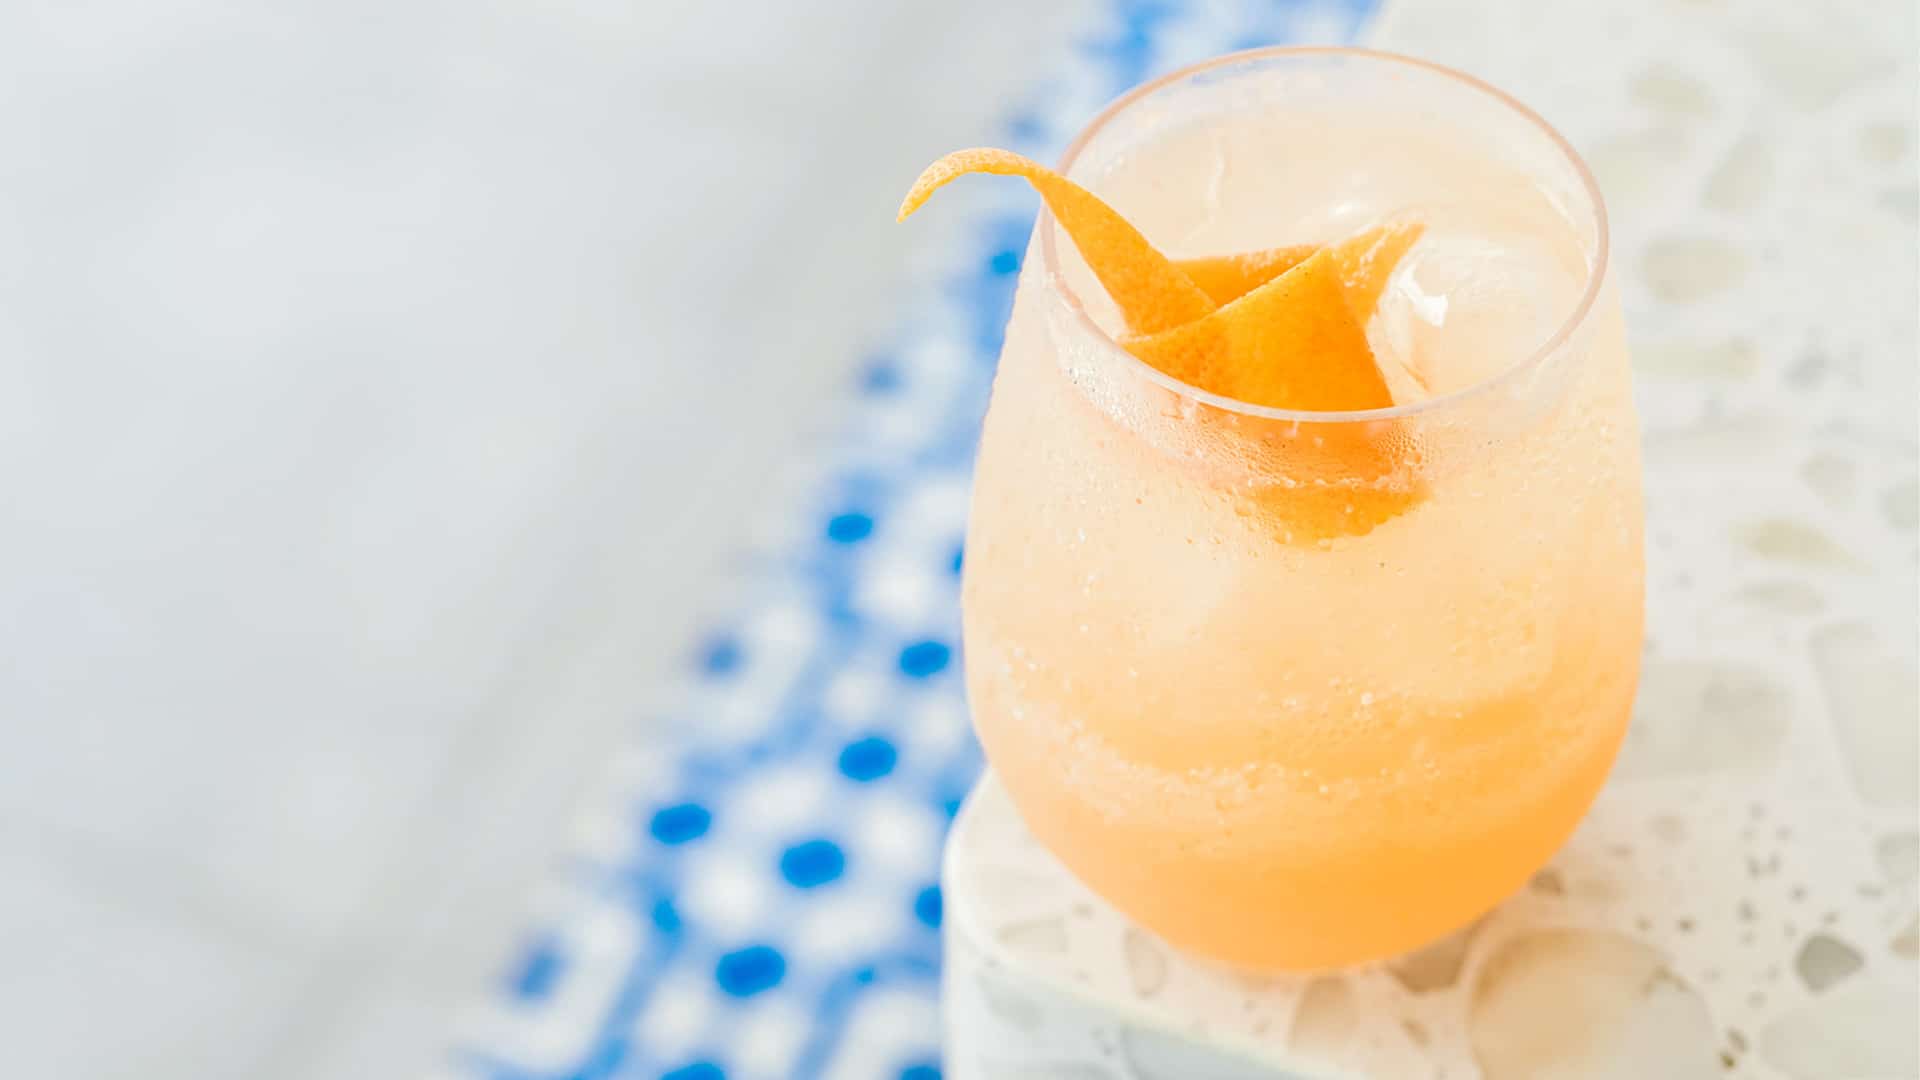 Orange cocktail in glass with garnish